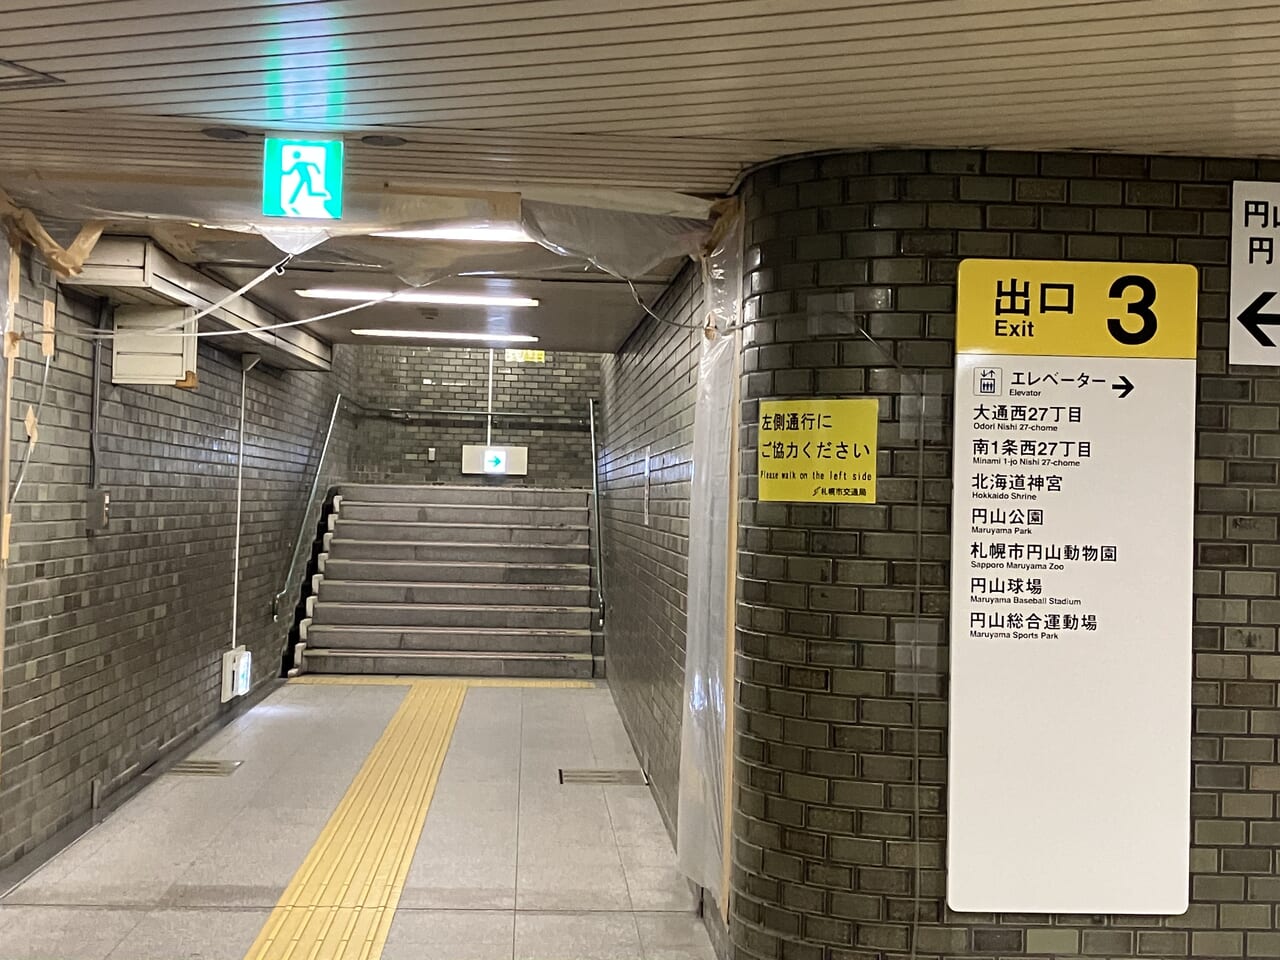 地下鉄円山公園駅の3番出口